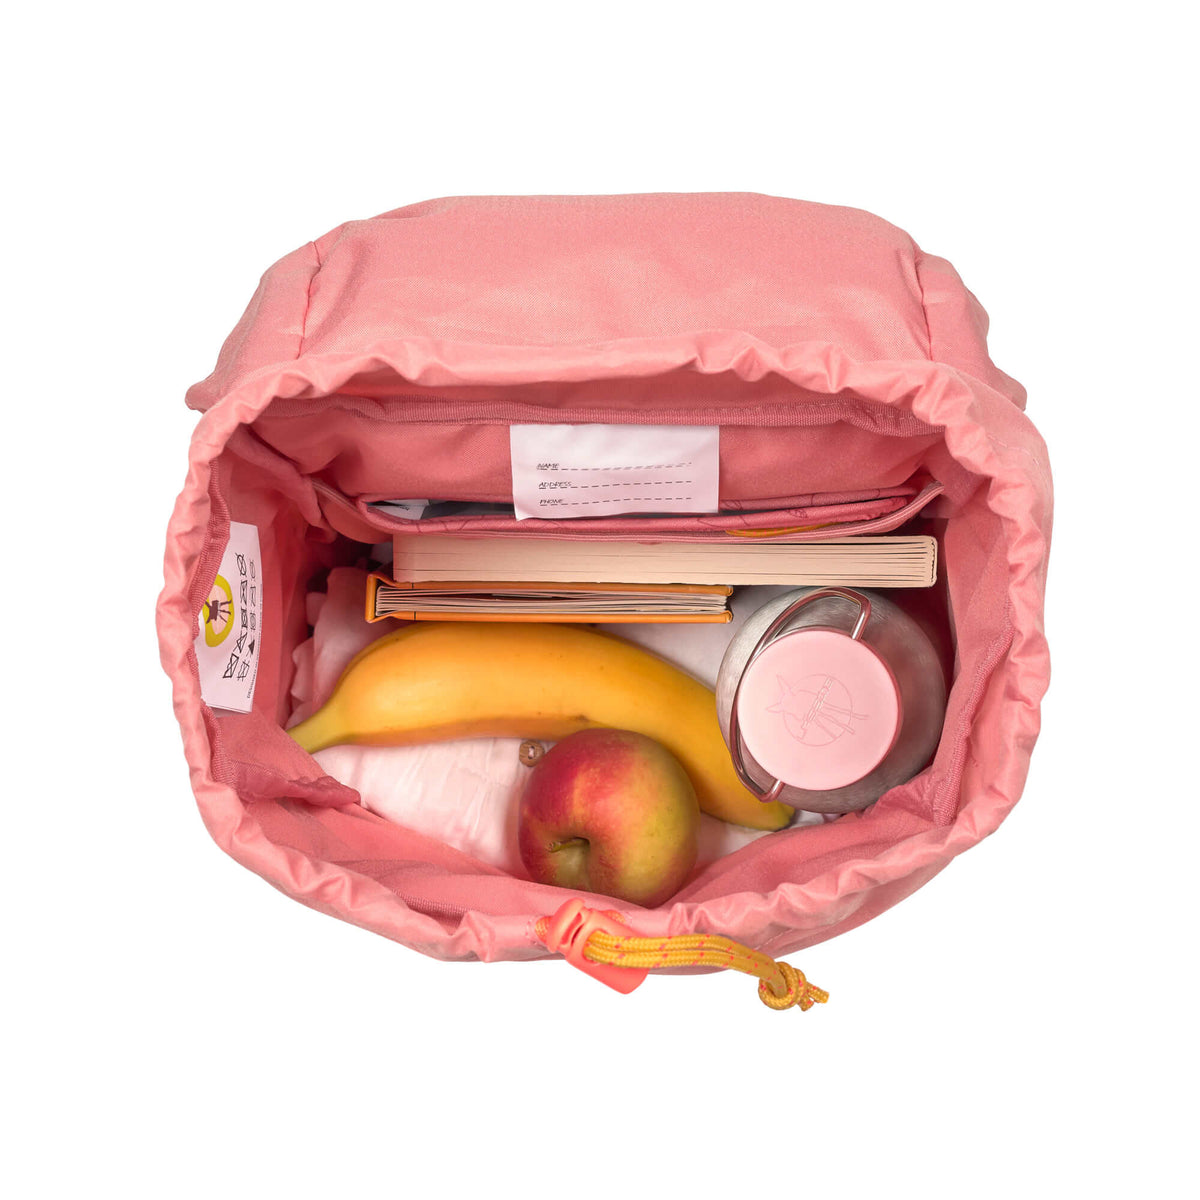 Lässig Kindergartenrucksack Outdoor mini Backpack Adventure rosa